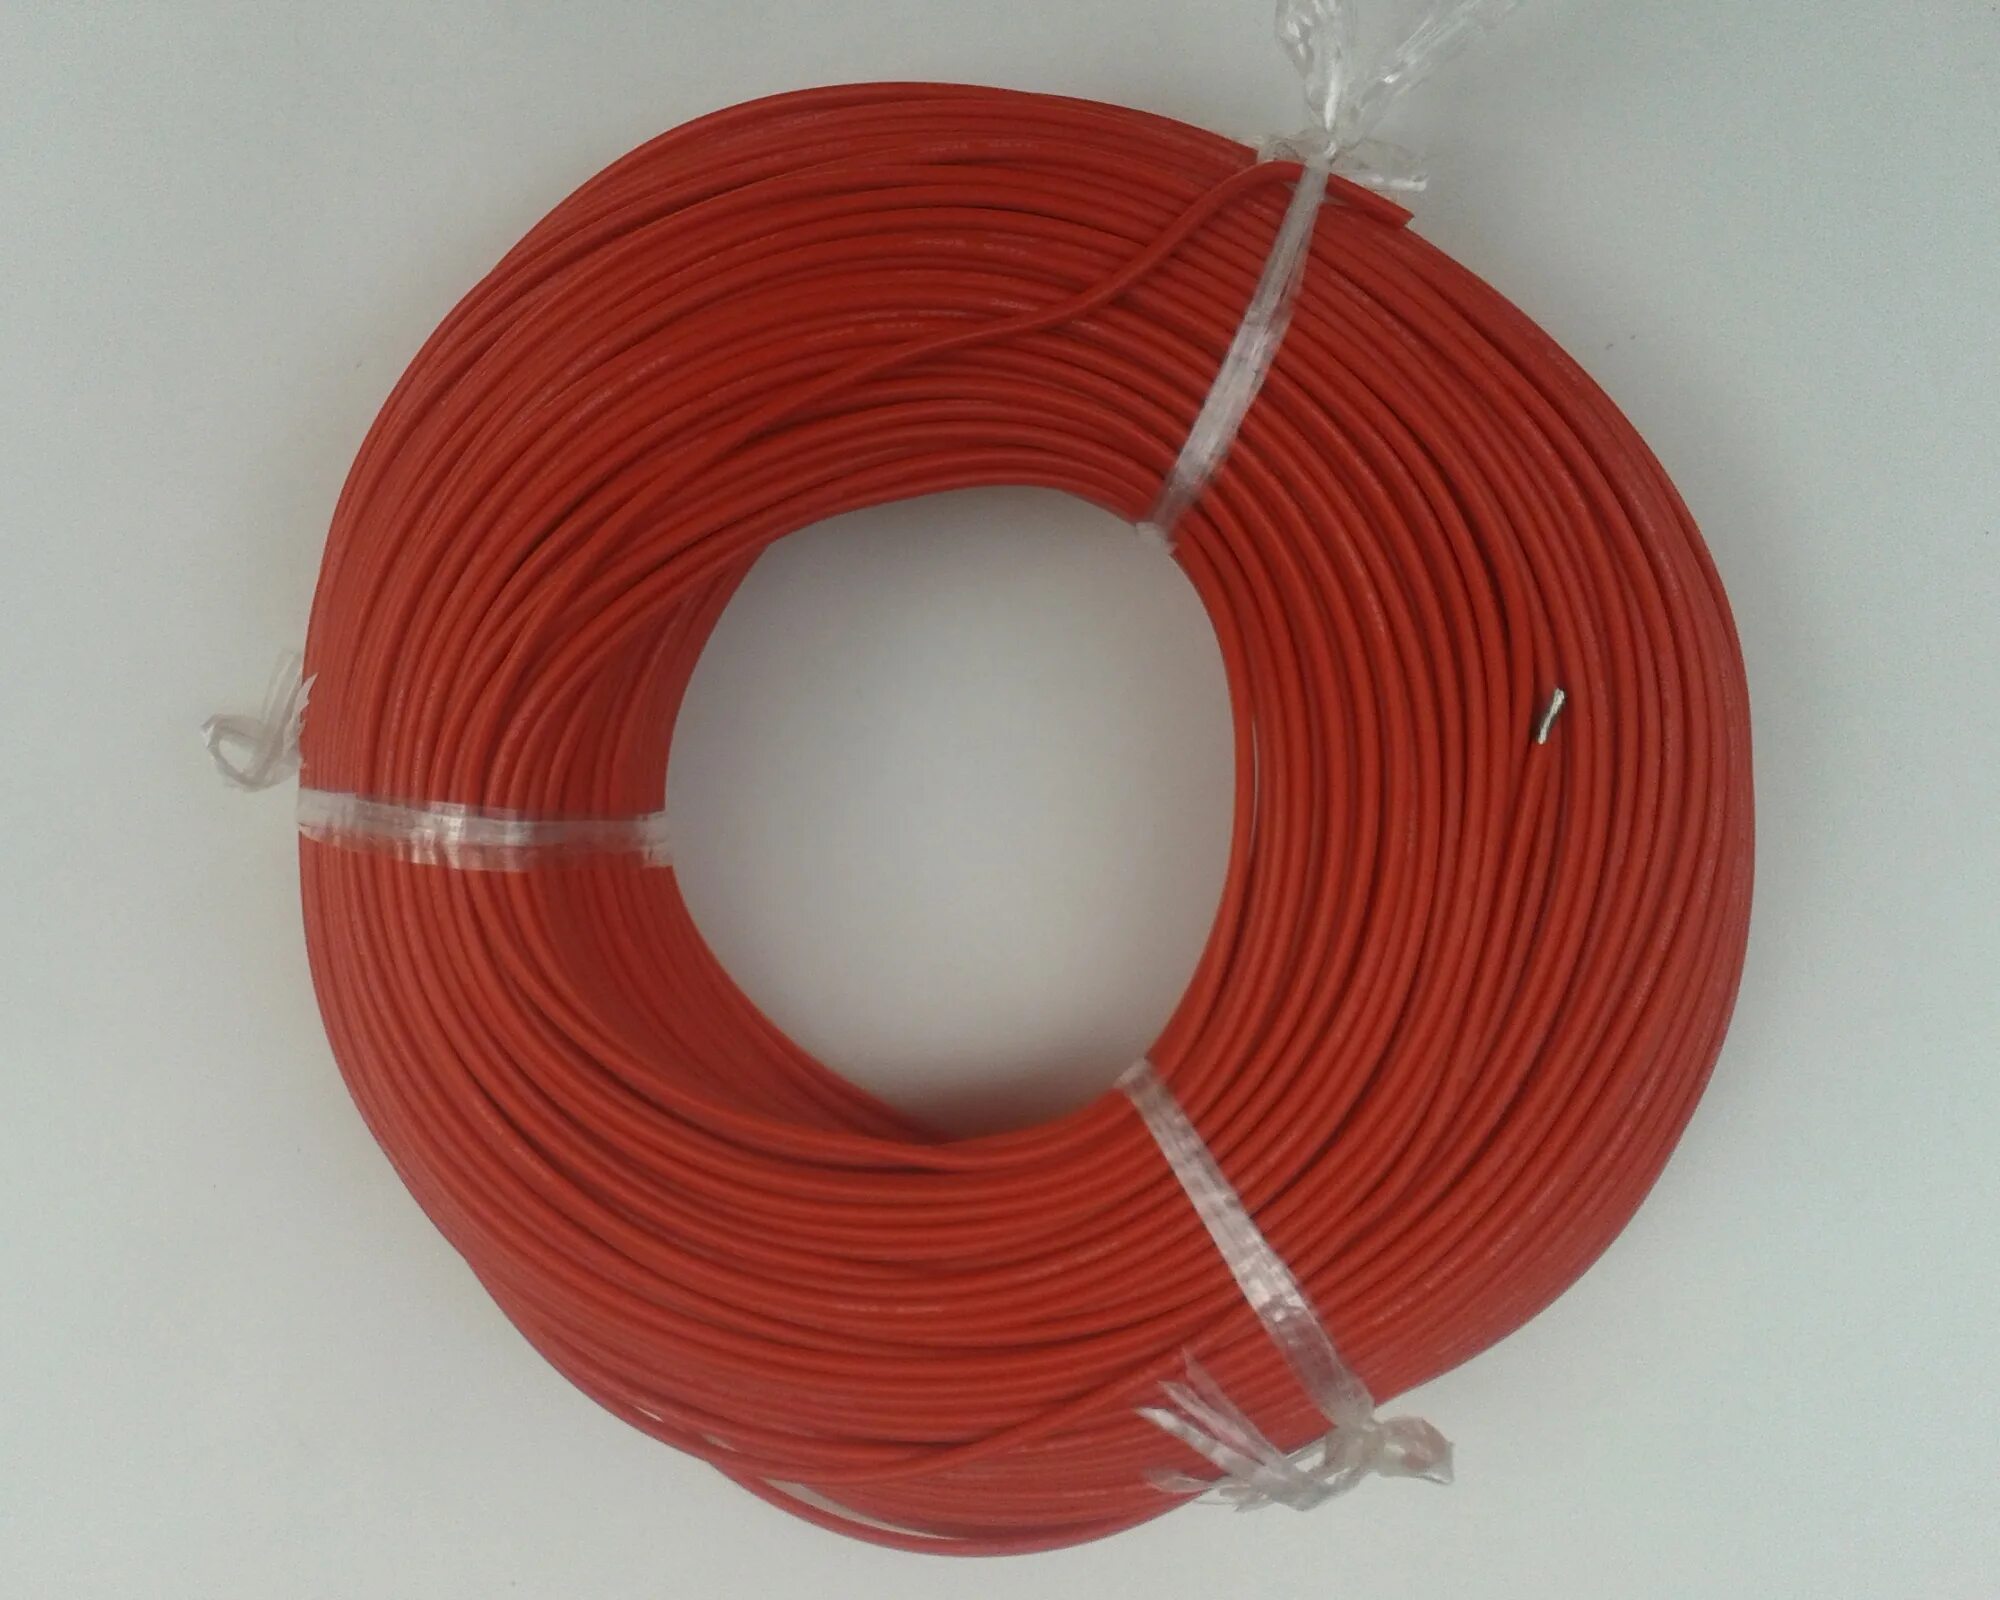 Силовой силиконовый кабель 14 AWG (красный/черный). Медный селиконовый кабель 4 AMG. Провод силиконовый 14 AWG. 4awg силовой кабель. Силиконовый кабель купить